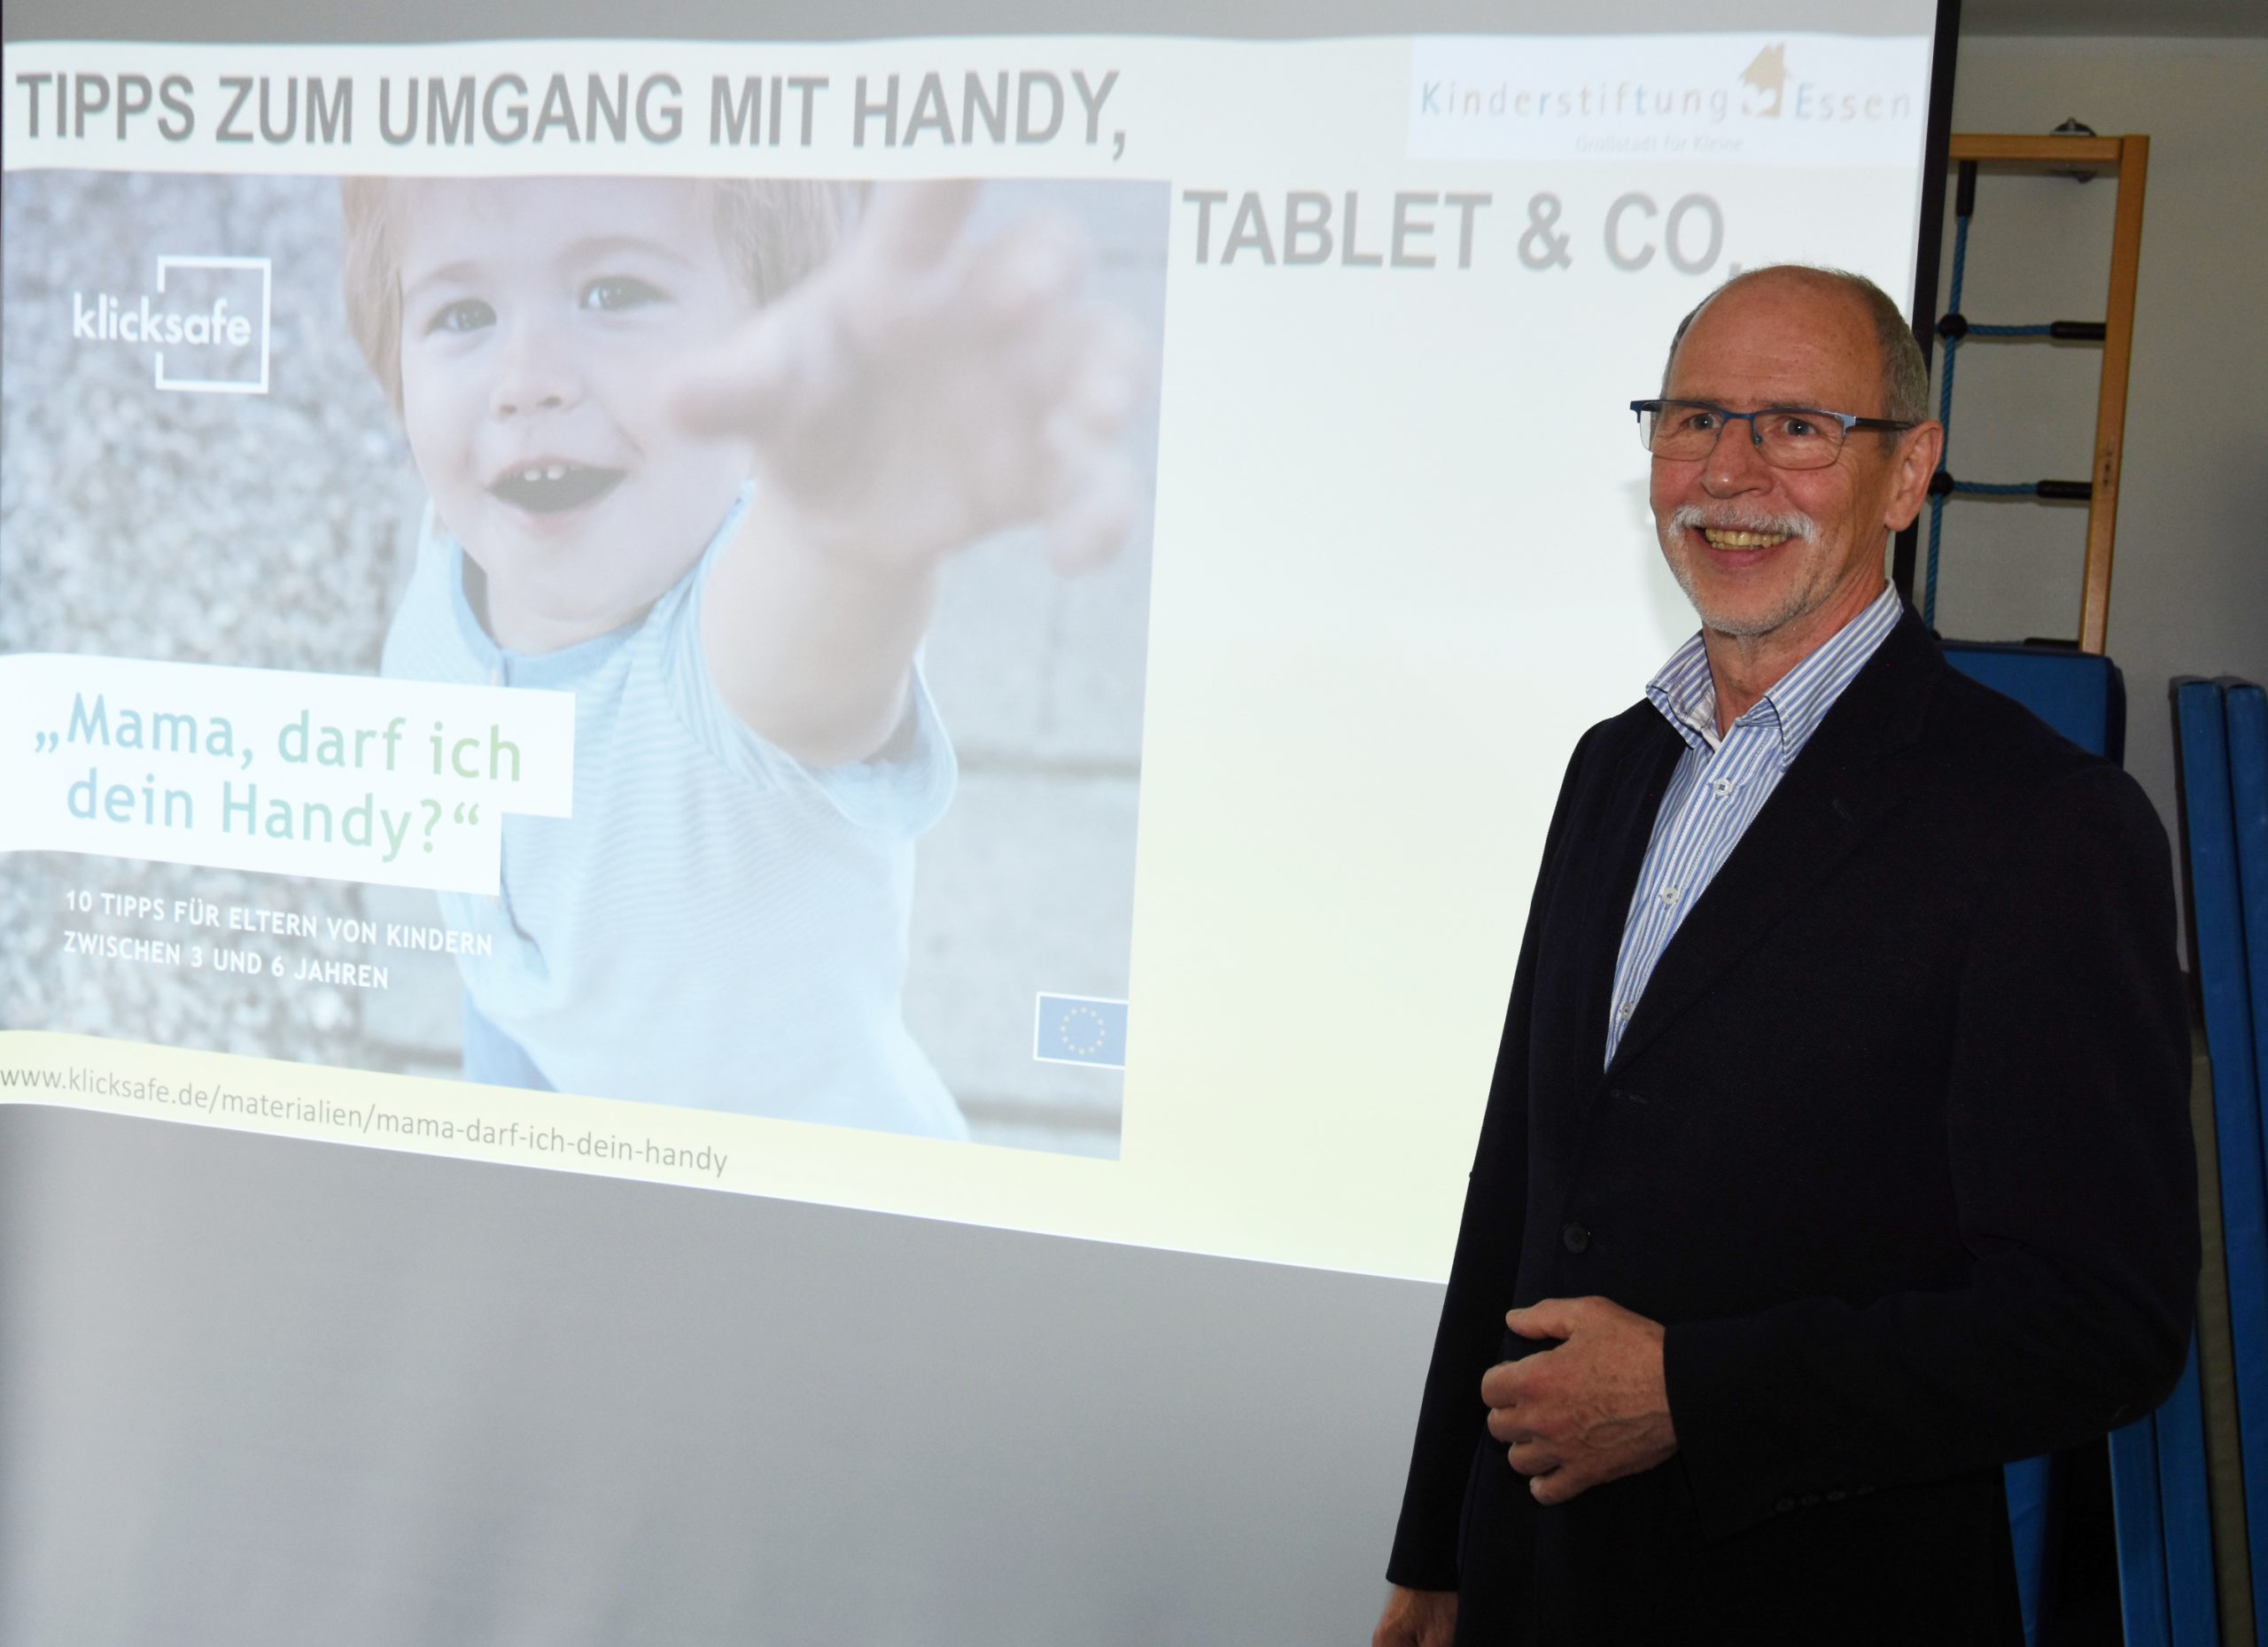 Andreas Ruff hält einen Vortrag zu kindlicher Medienkompetenz